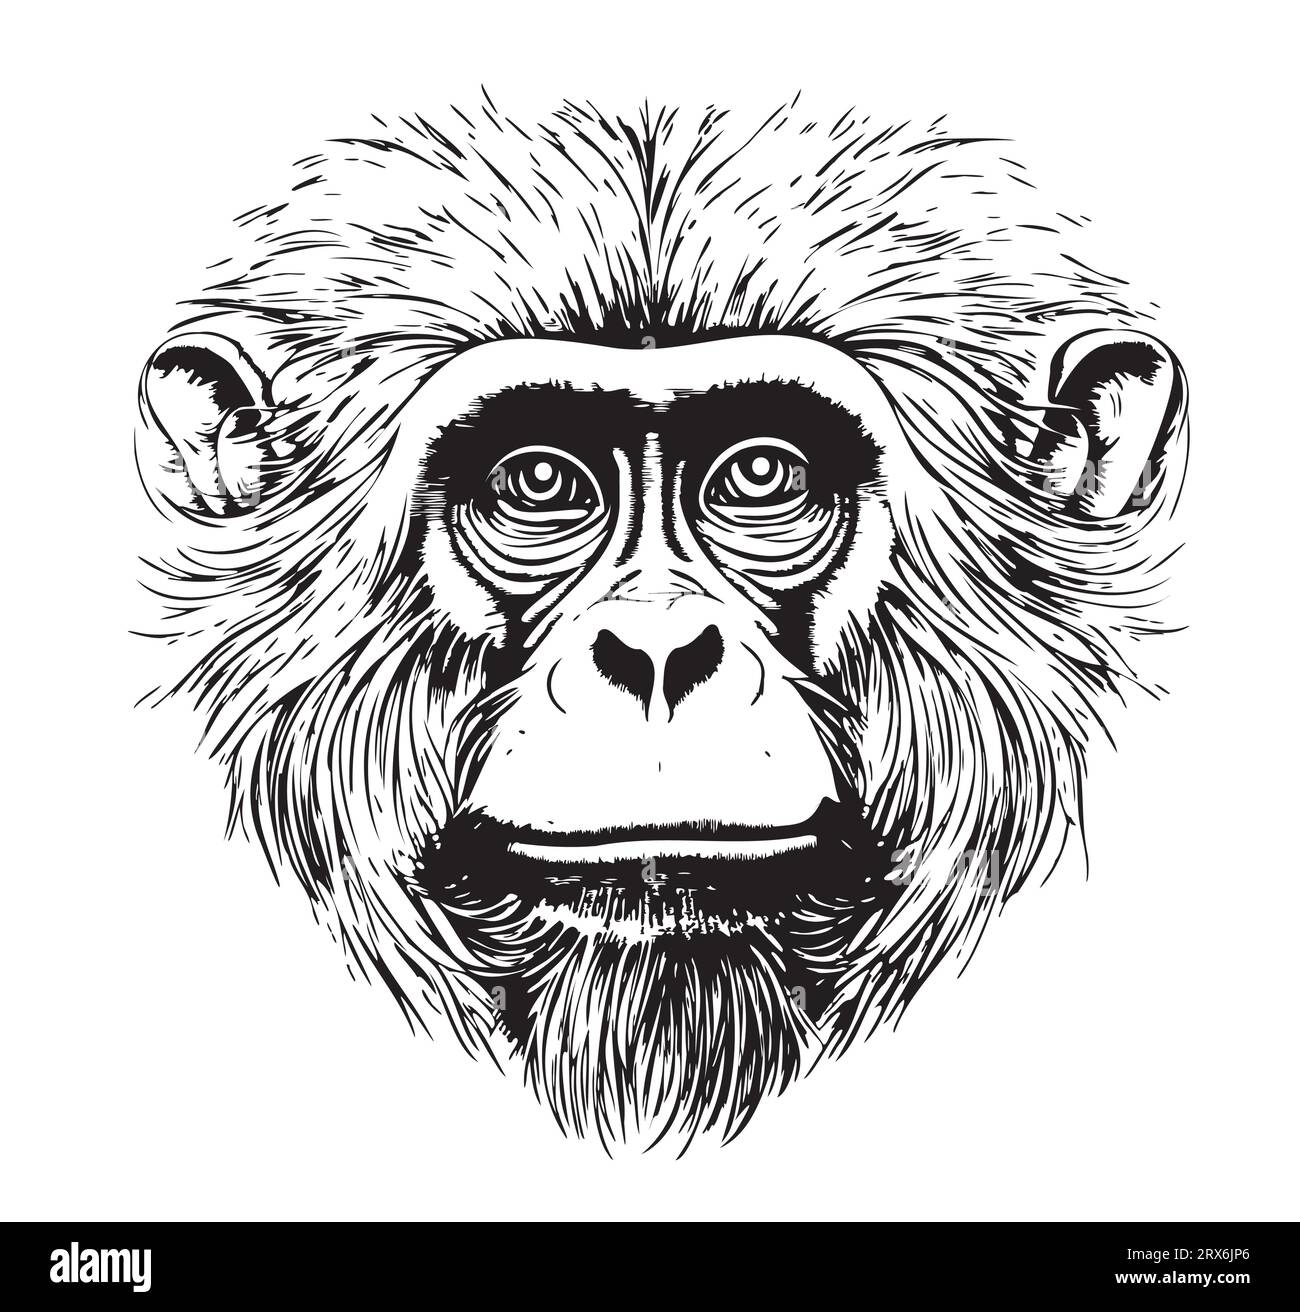 Affe Porträt Skizze Hand gezeichnet Vektor Wild Smart Animals Stock Vektor